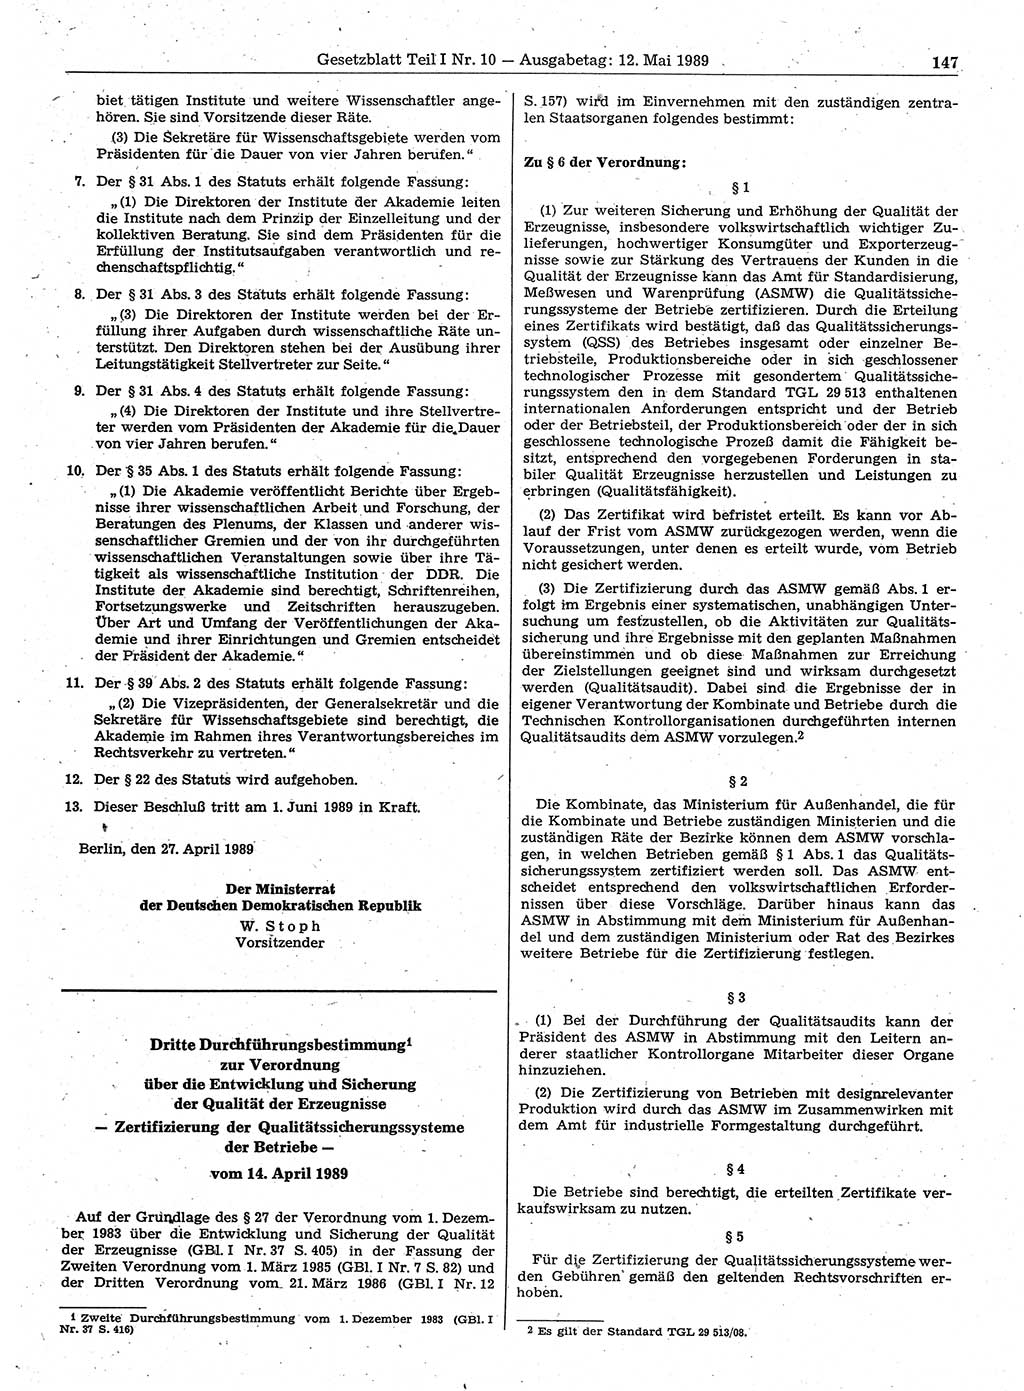 Gesetzblatt (GBl.) der Deutschen Demokratischen Republik (DDR) Teil Ⅰ 1989, Seite 147 (GBl. DDR Ⅰ 1989, S. 147)